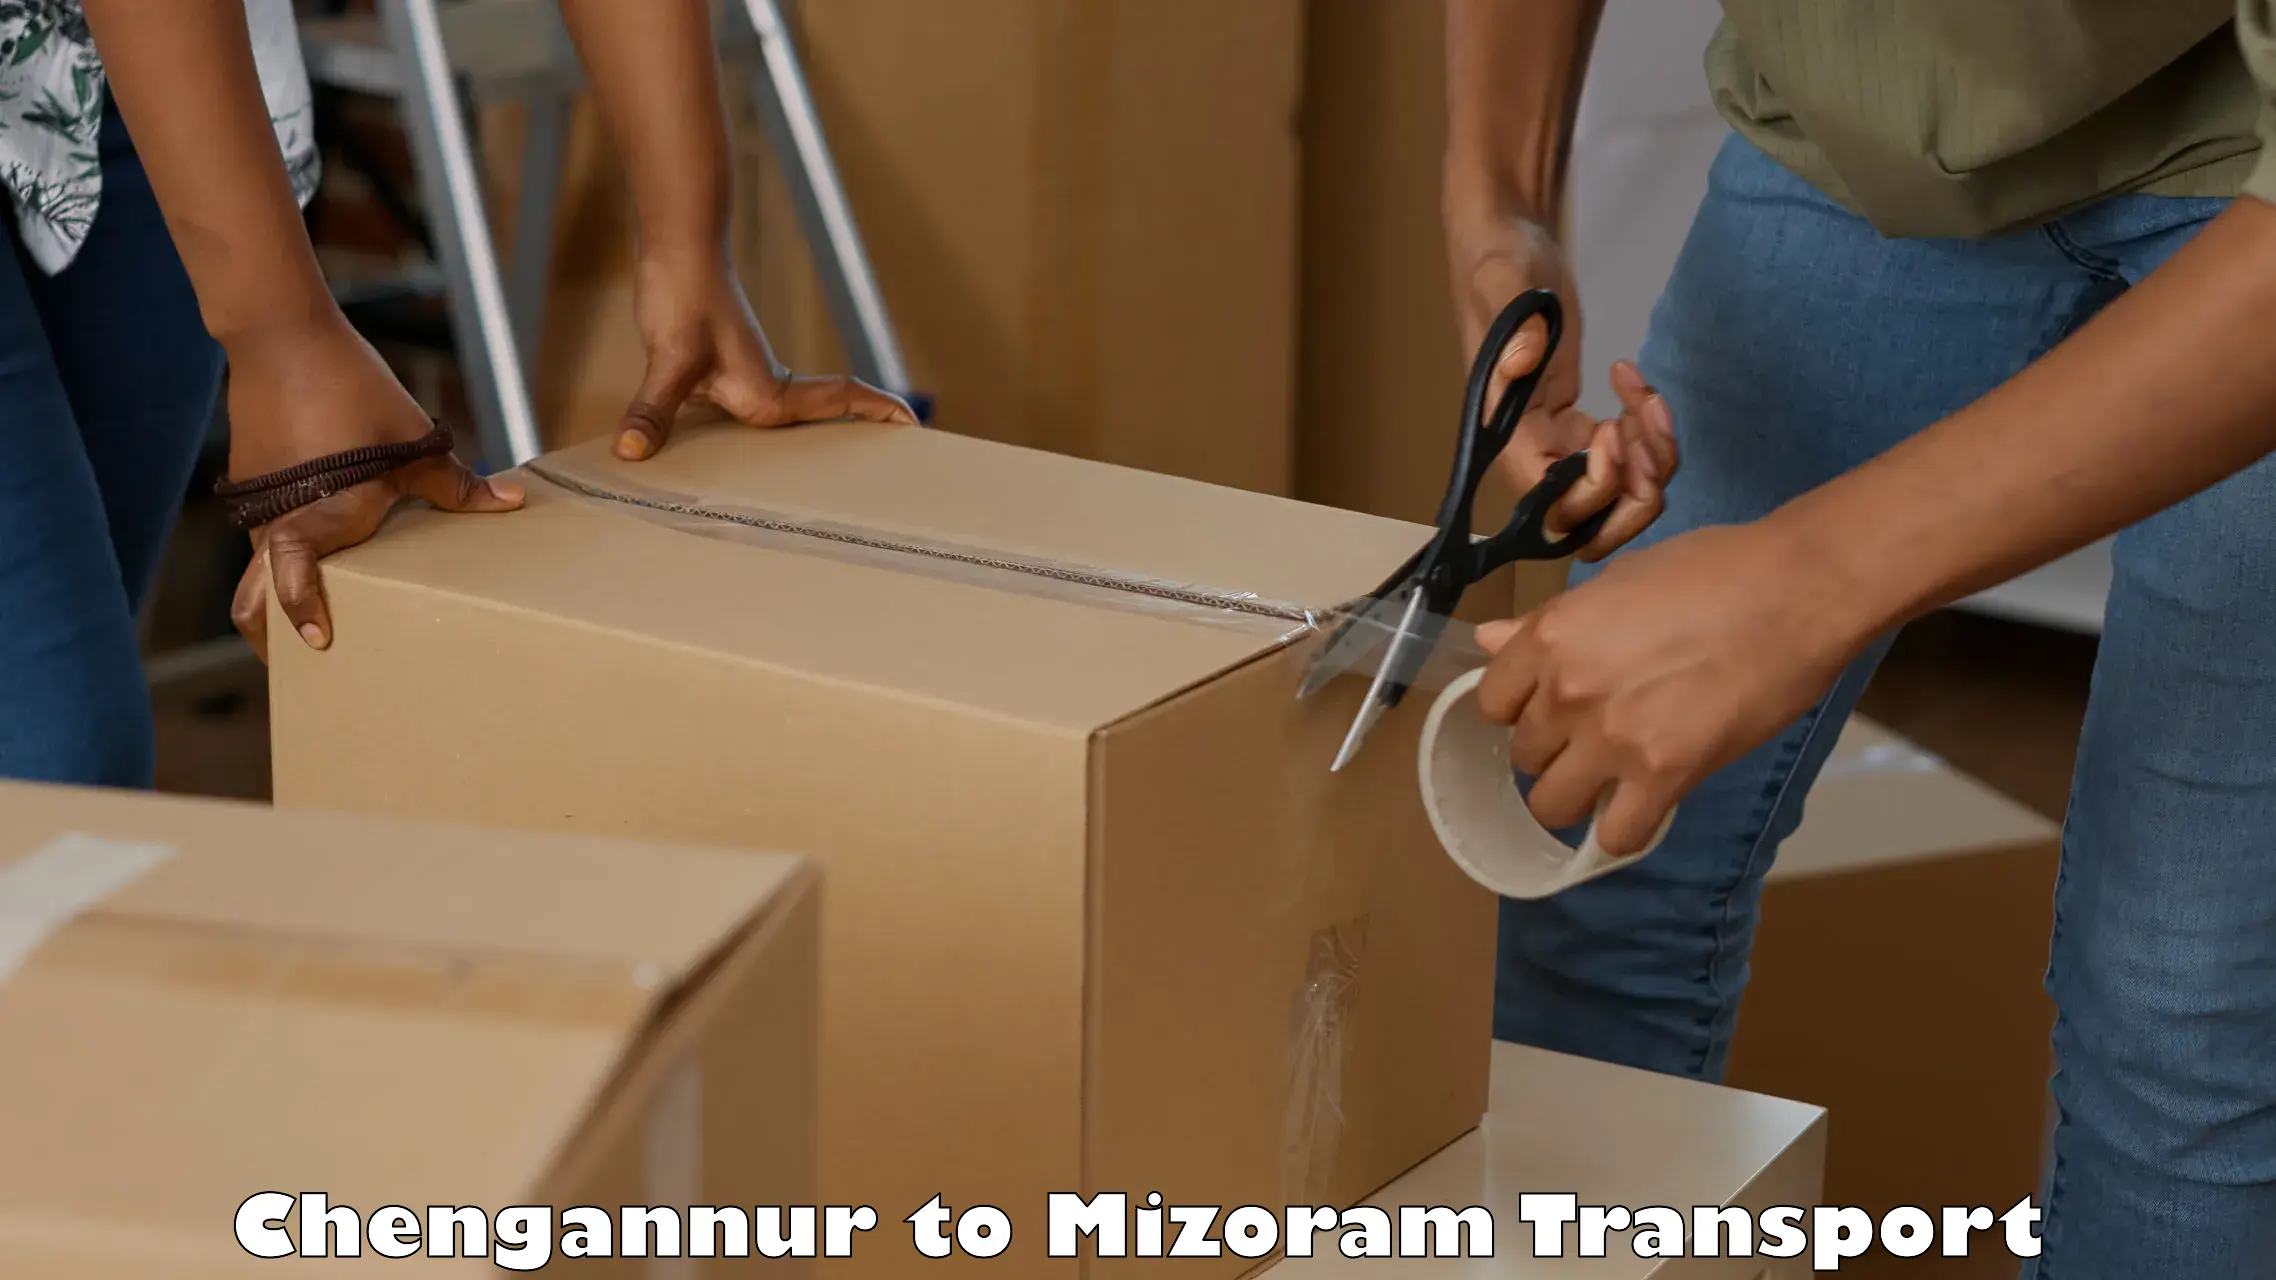 Transport in sharing Chengannur to Mizoram